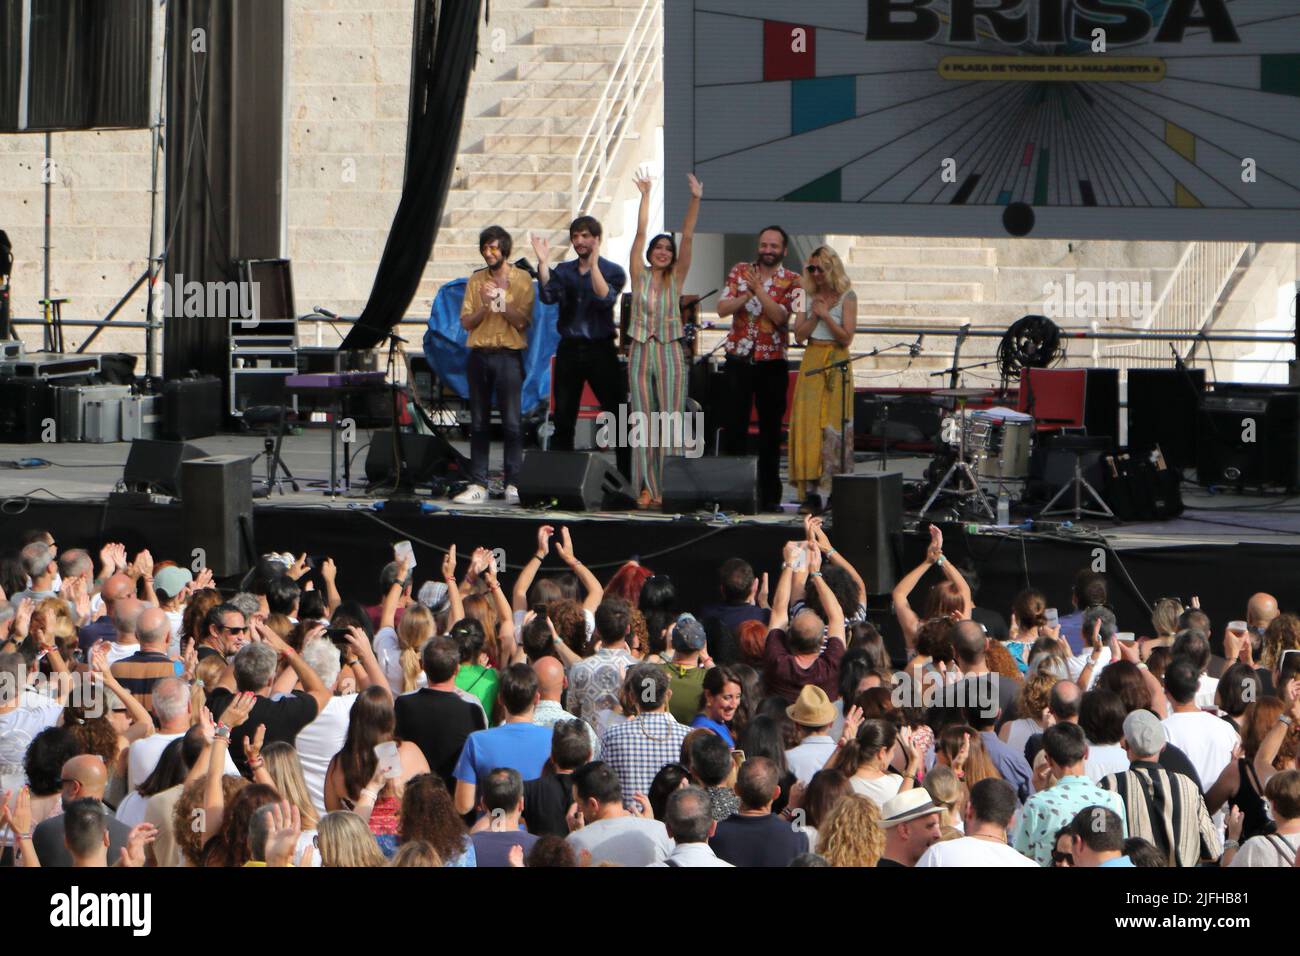 2 luglio 2022, Malaga, Spagna. Anni B Sweet al Festival di Brisa. 40th anniversario di Danza invisibile. Foto Stock